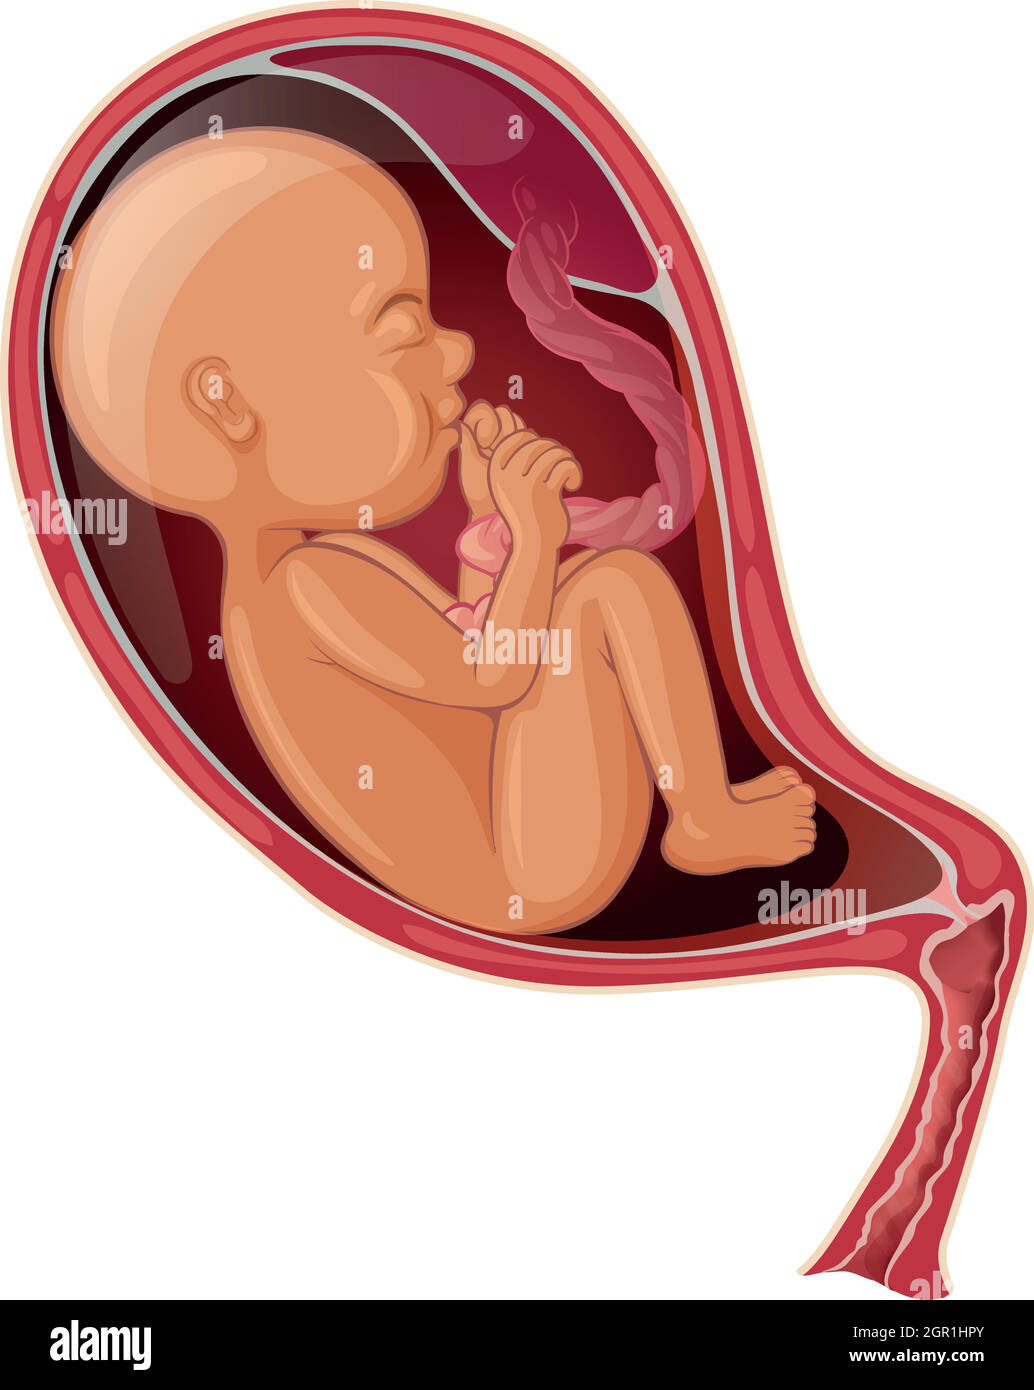 Bambino all'interno dell'utero della donna Illustrazione Vettoriale